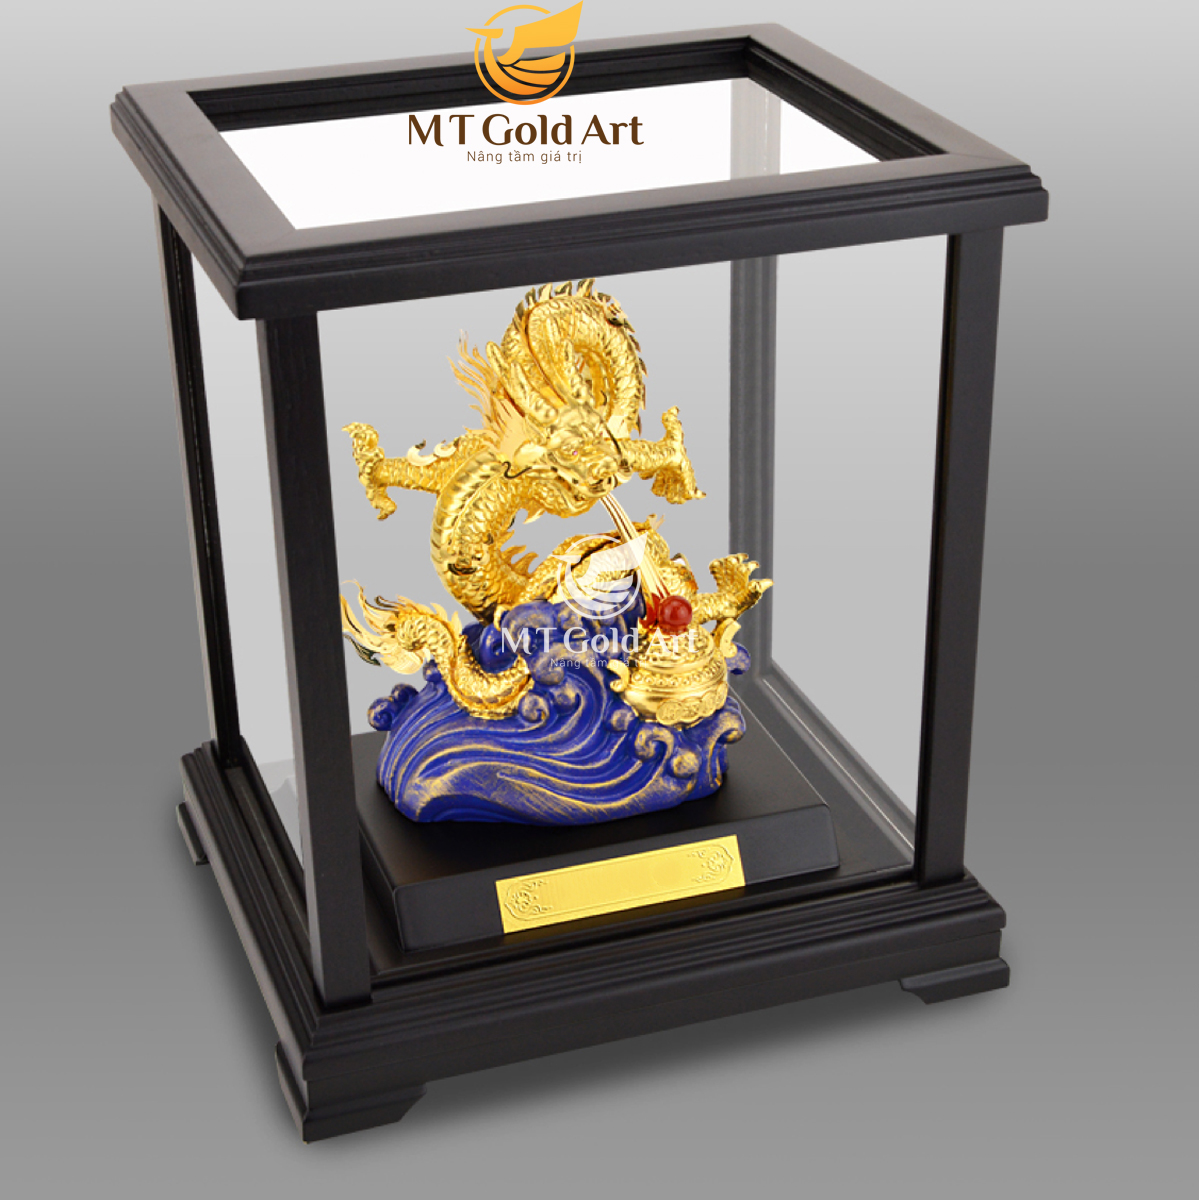 Tượng Rồng phong thủy nhả ngọc dát vàng (17x20x24cm) MT Gold Art- Hàng chính hãng, trang trí nhà cửa, phòng làm việc, quà tặng sếp, đối tác, khách hàng, tân gia, khai trương 